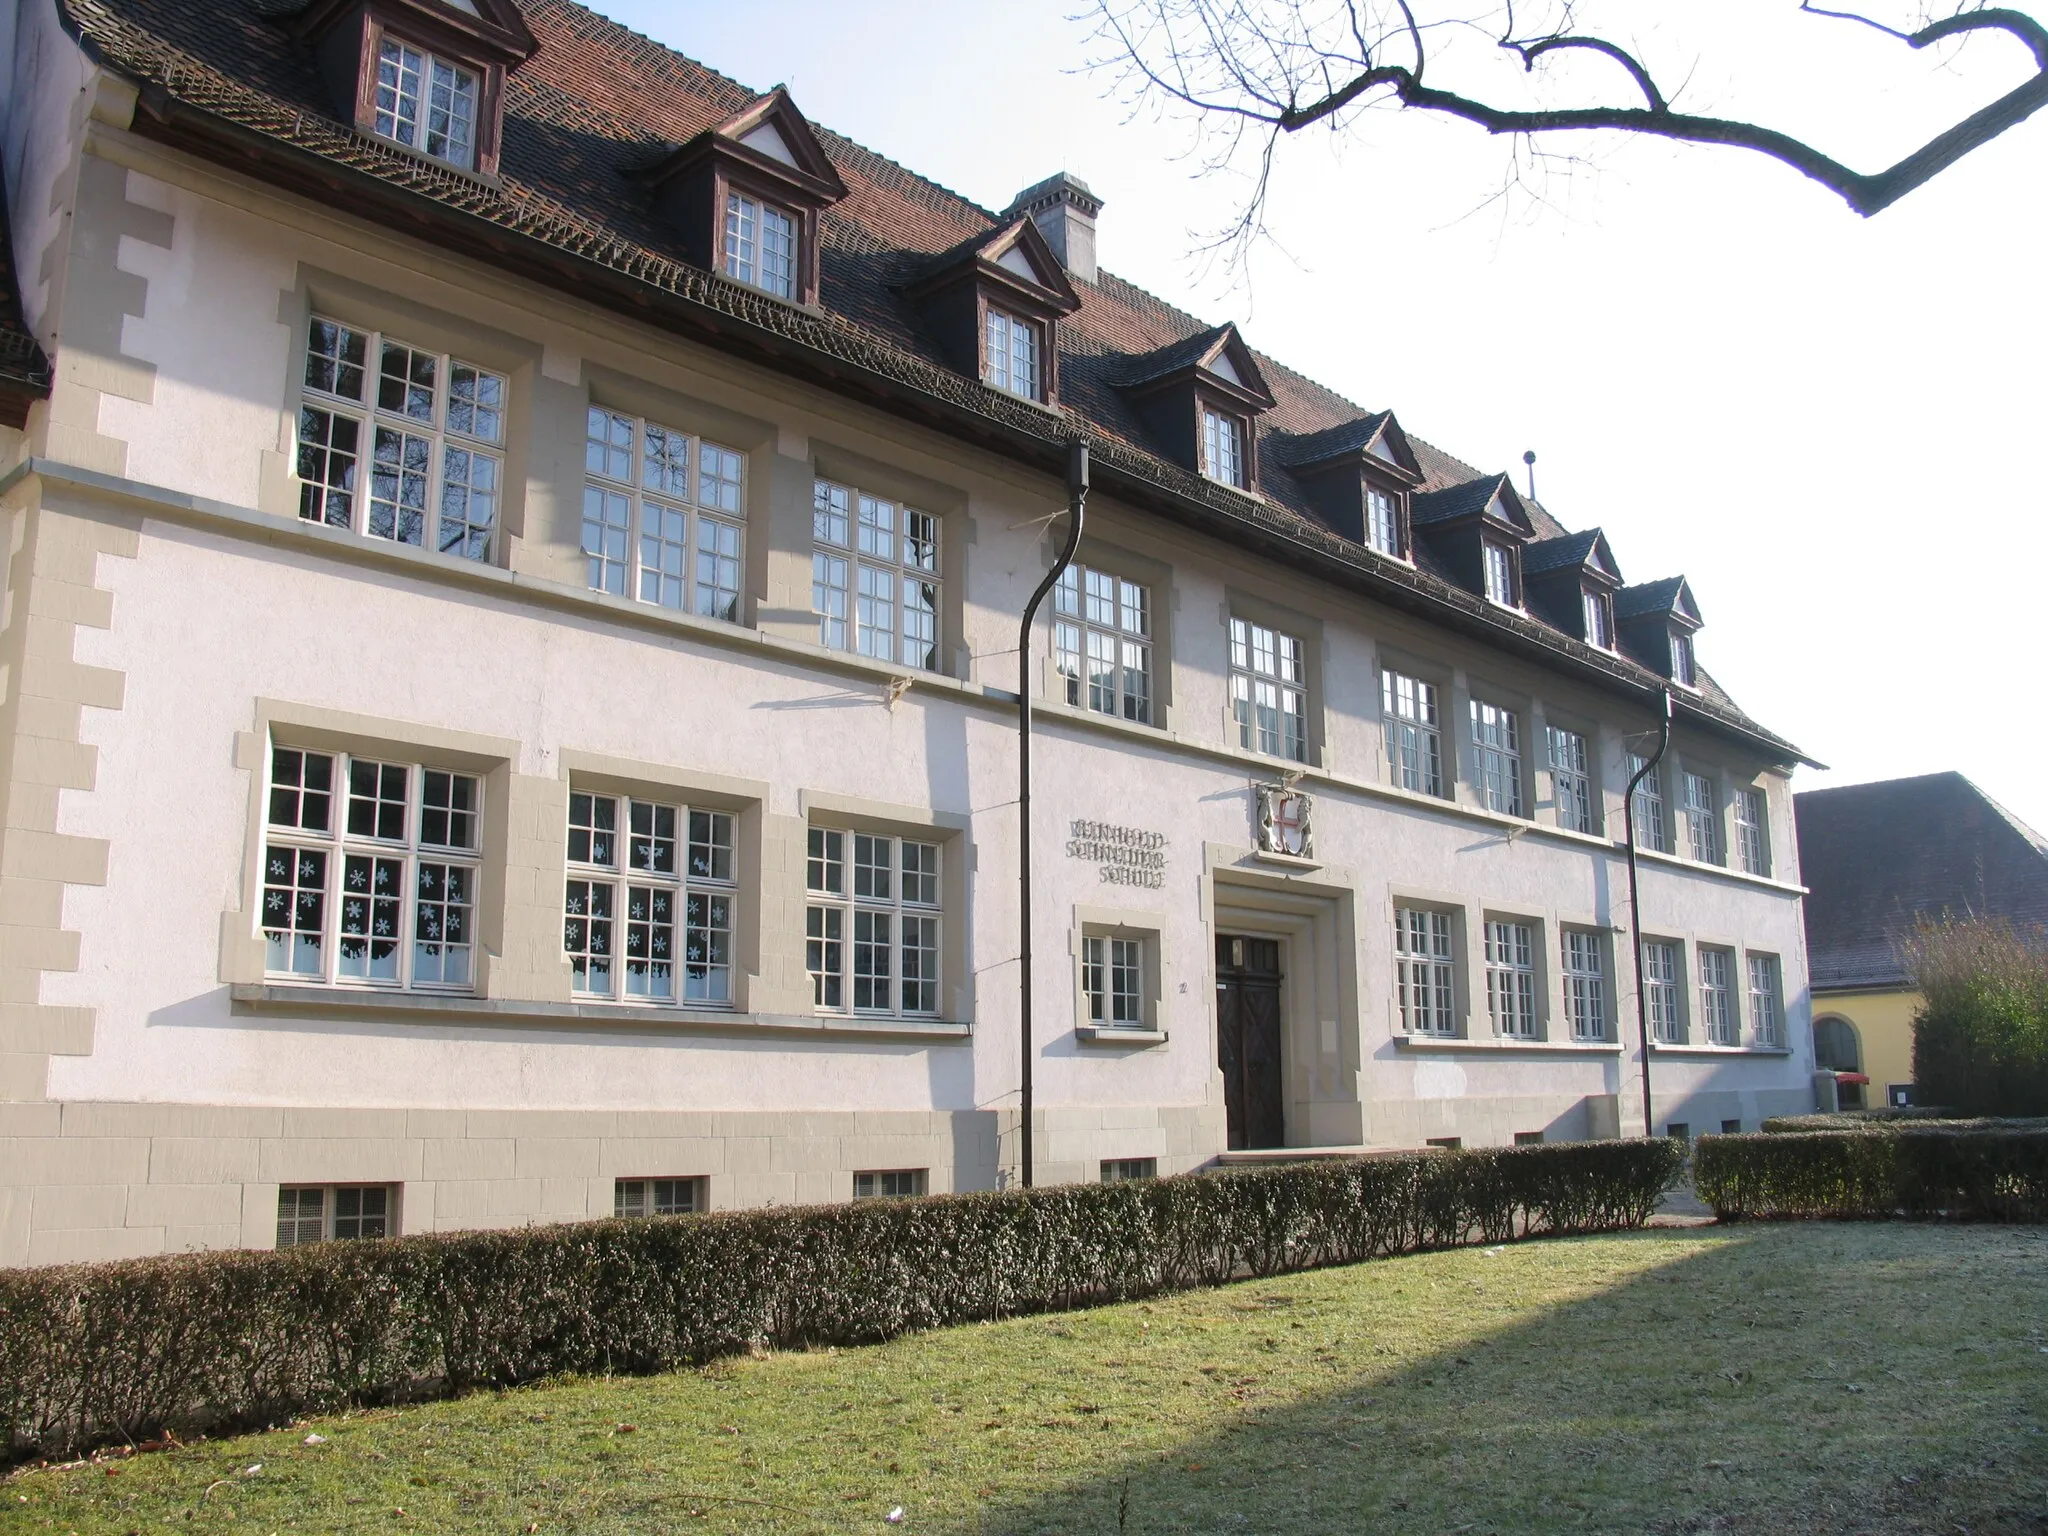 Photo showing: School "Reinhold-Schneider-Schule" in Littenweiler , Freiburg, Germany